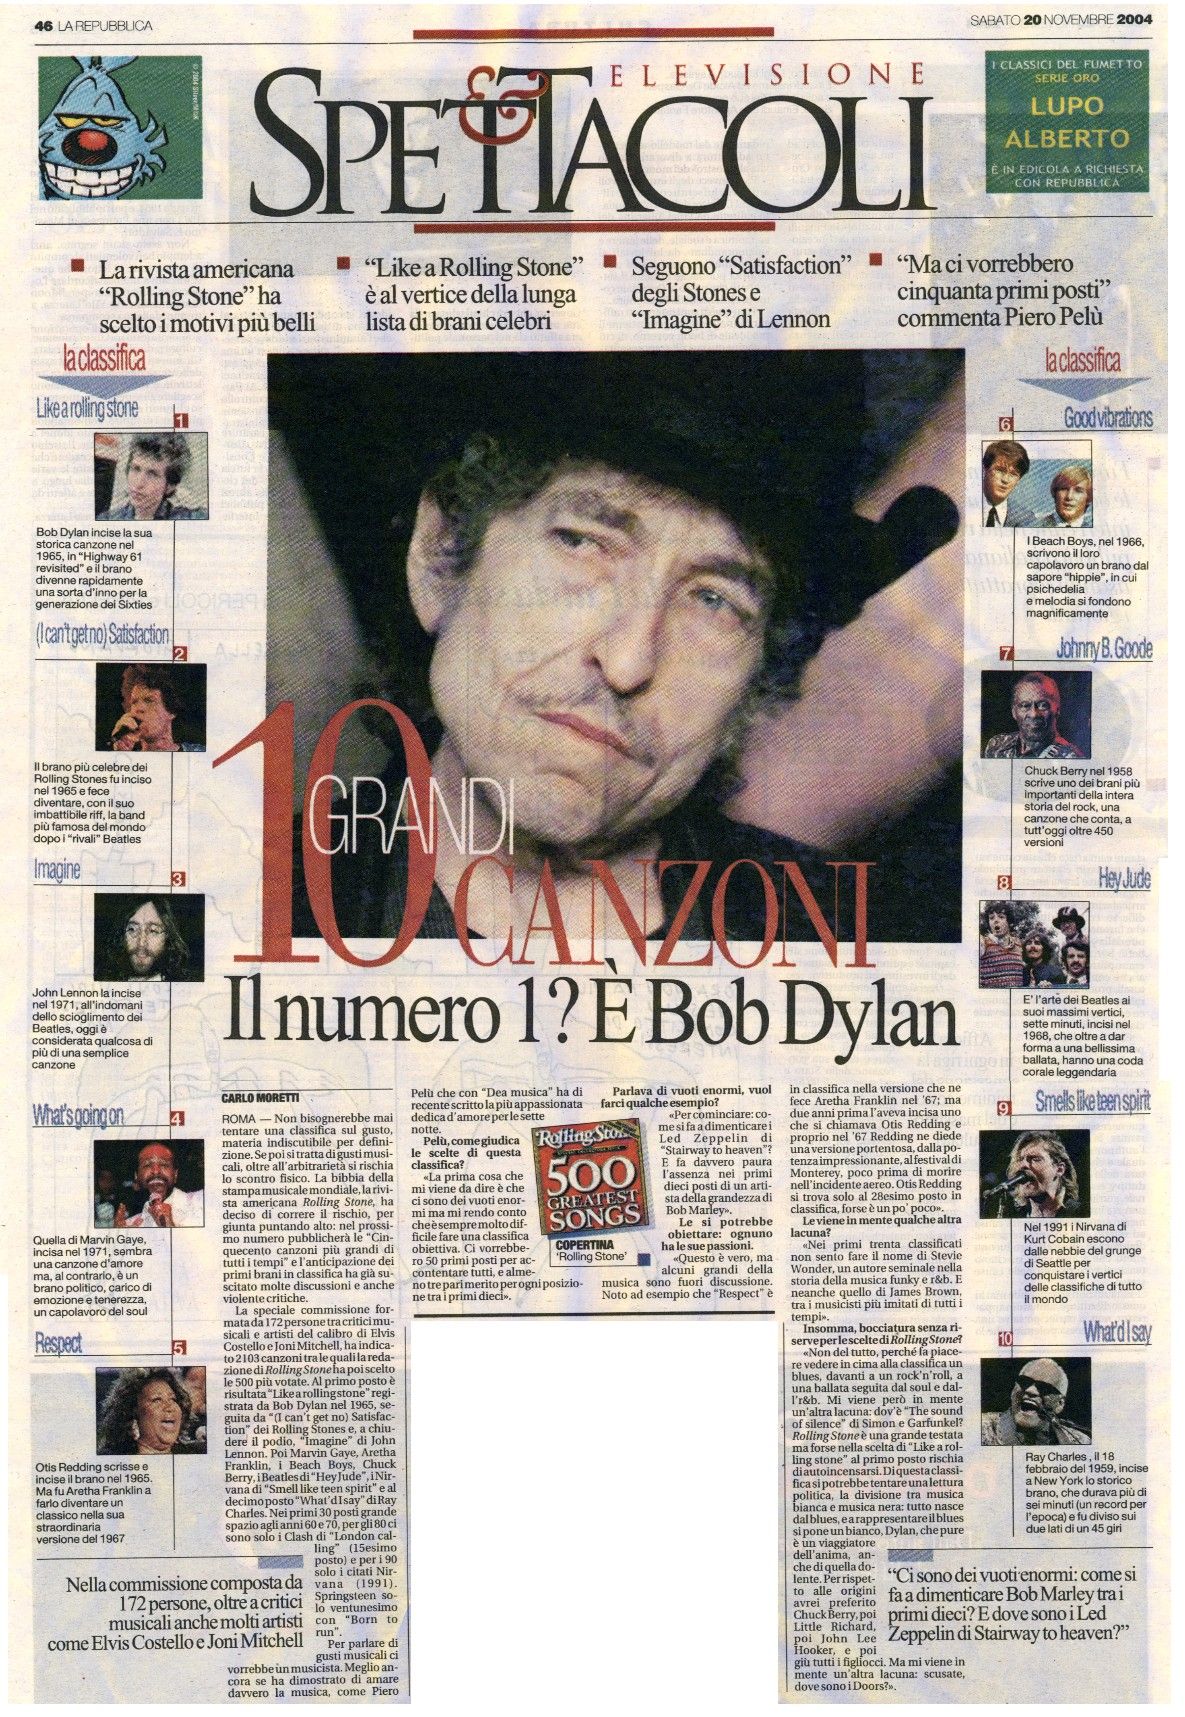 la repubblica 20 november 2004 Bob Dylan front cover